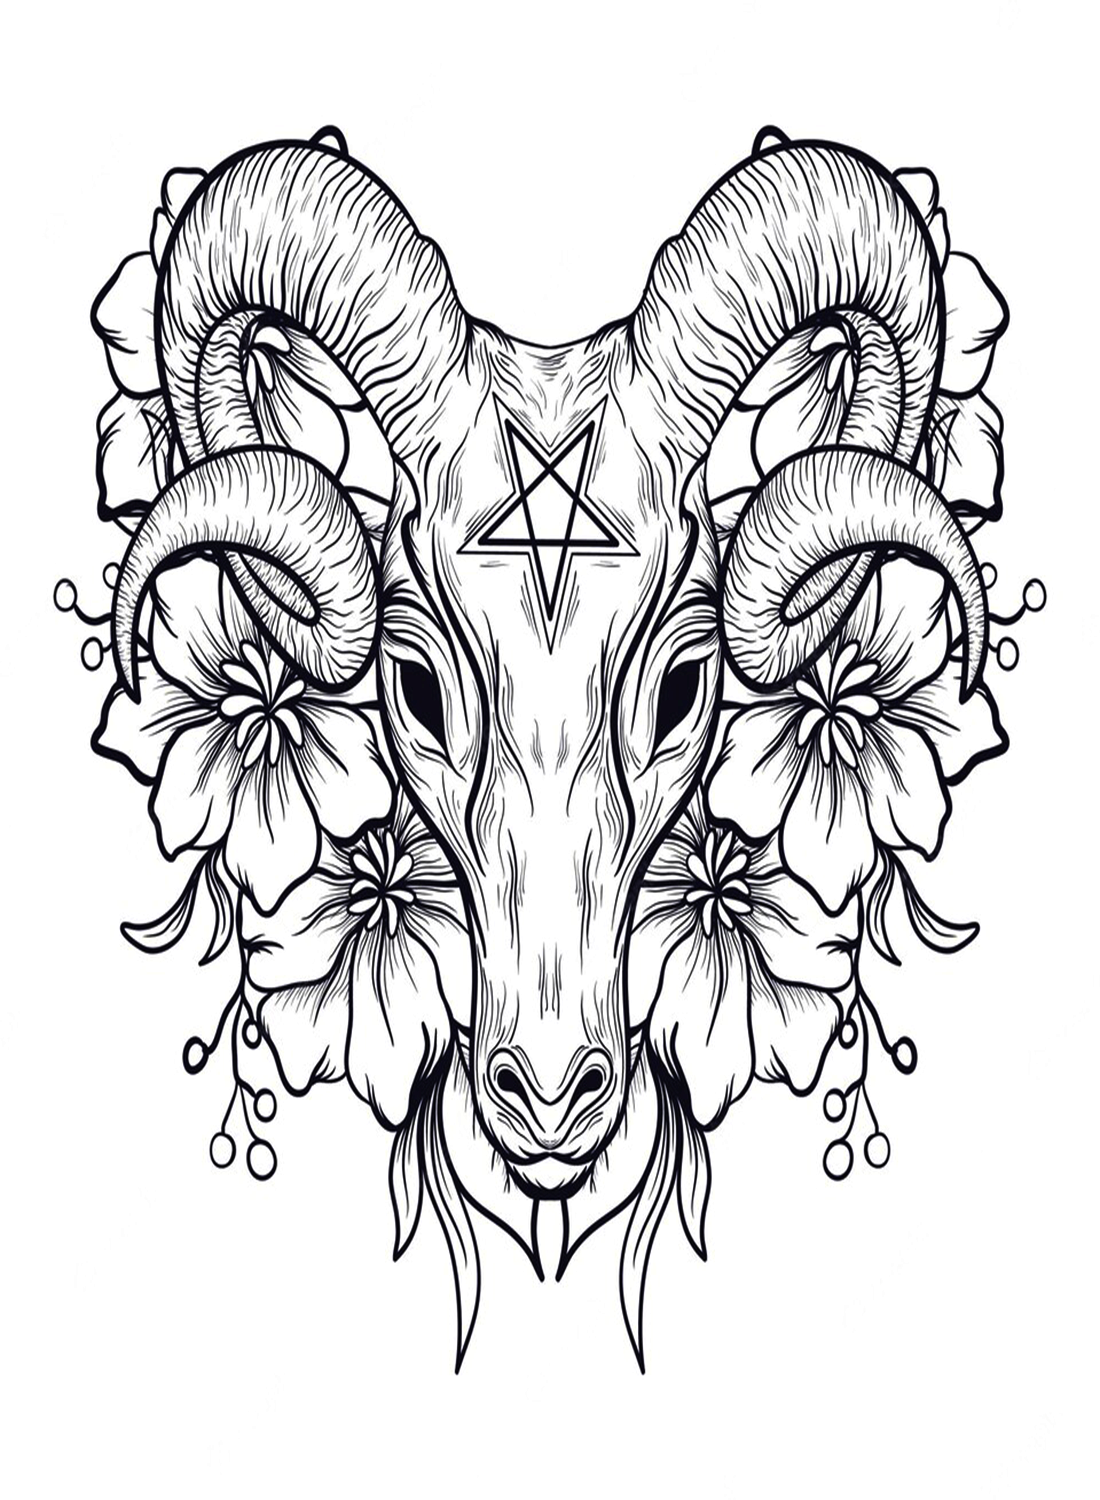 Дизайн футболки с головой муфлона в татуировке от Mouflon